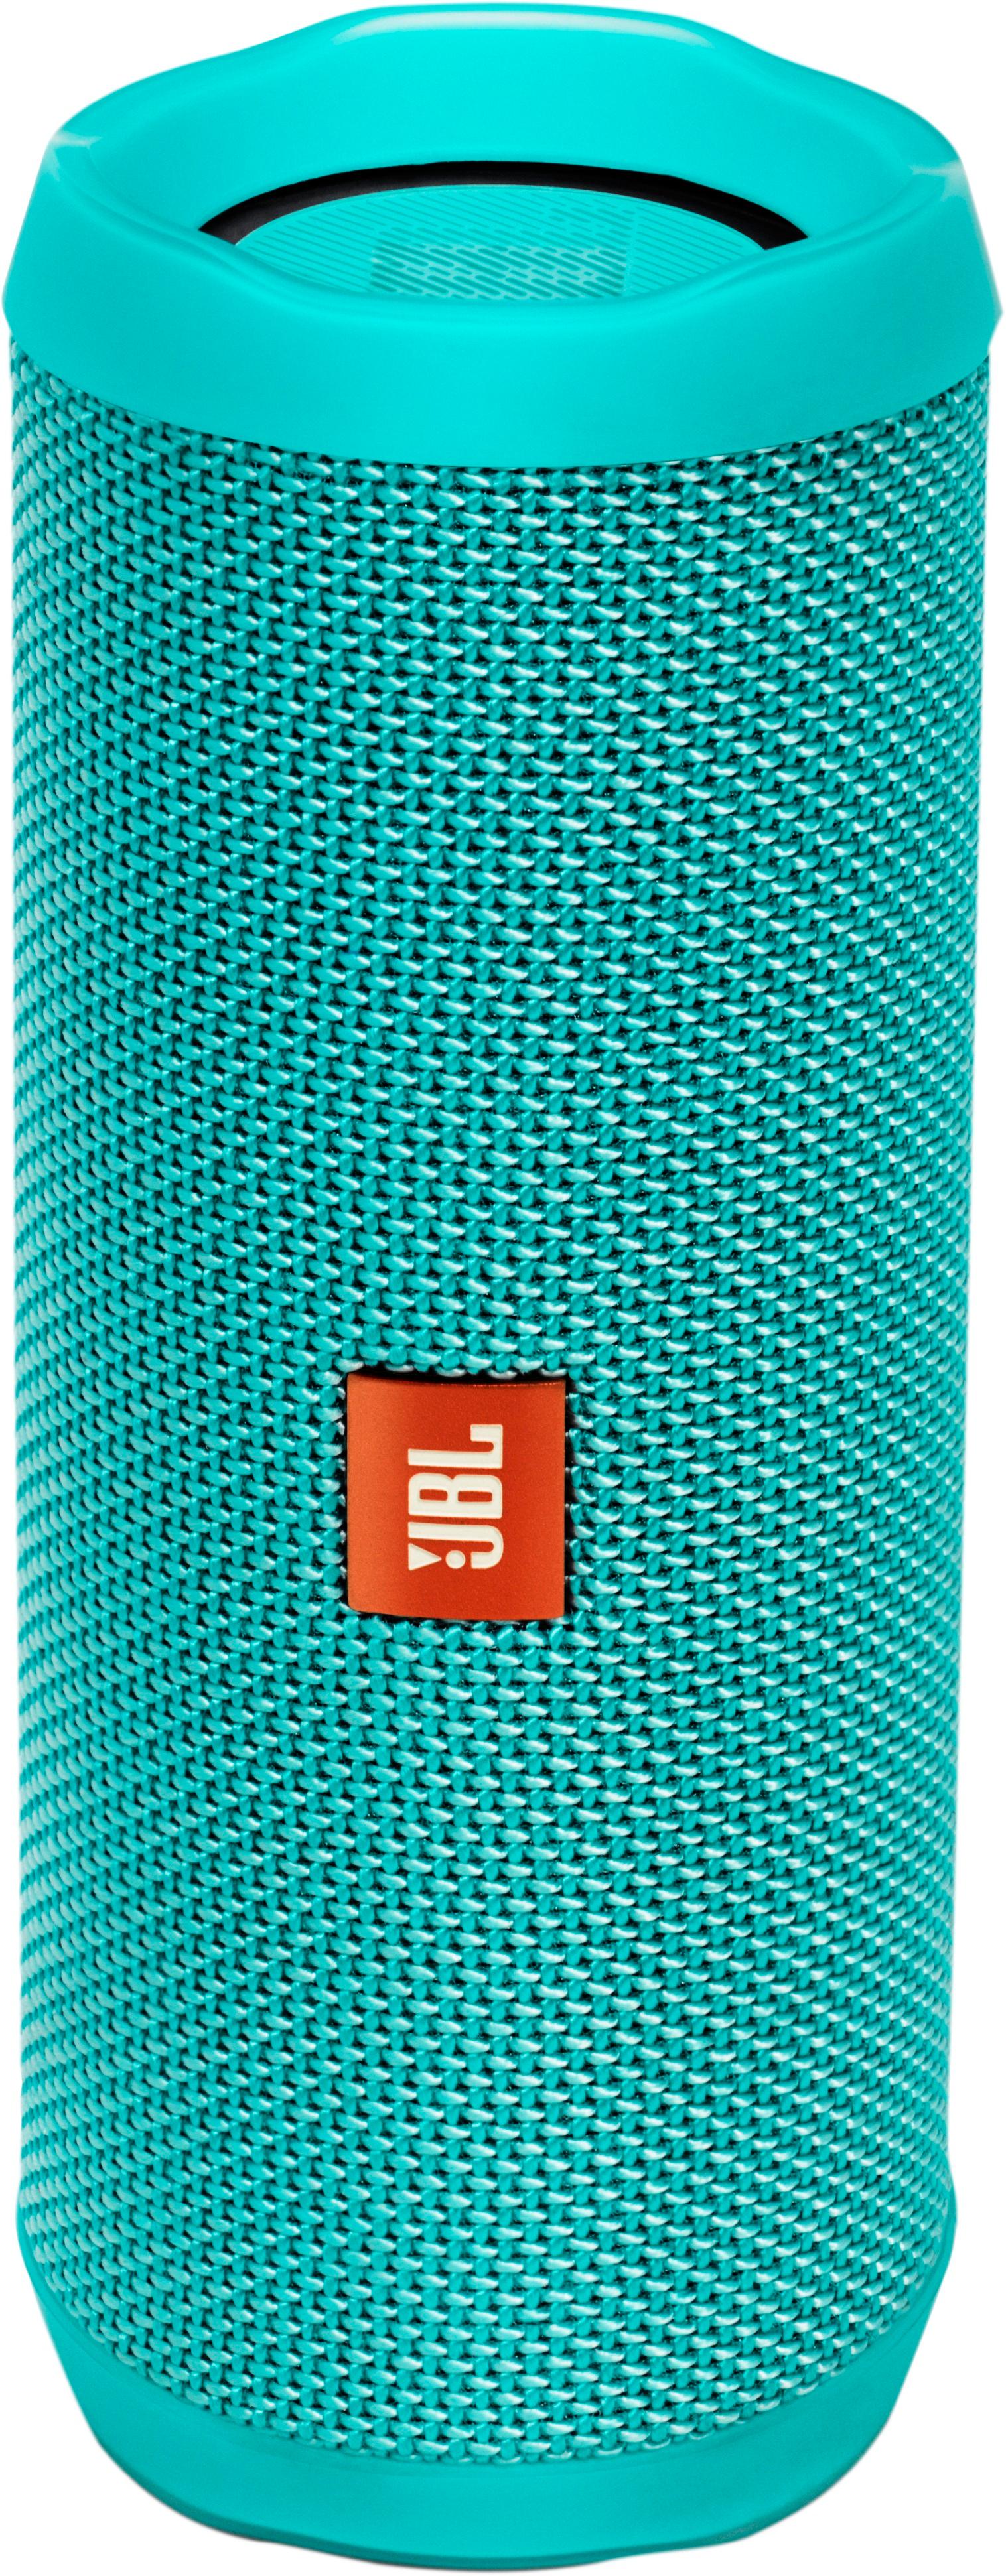 Forkert gå på indkøb Surichinmoi Best Buy: JBL Flip 4 Portable Bluetooth Speaker Teal JBLFLIP4TELAM